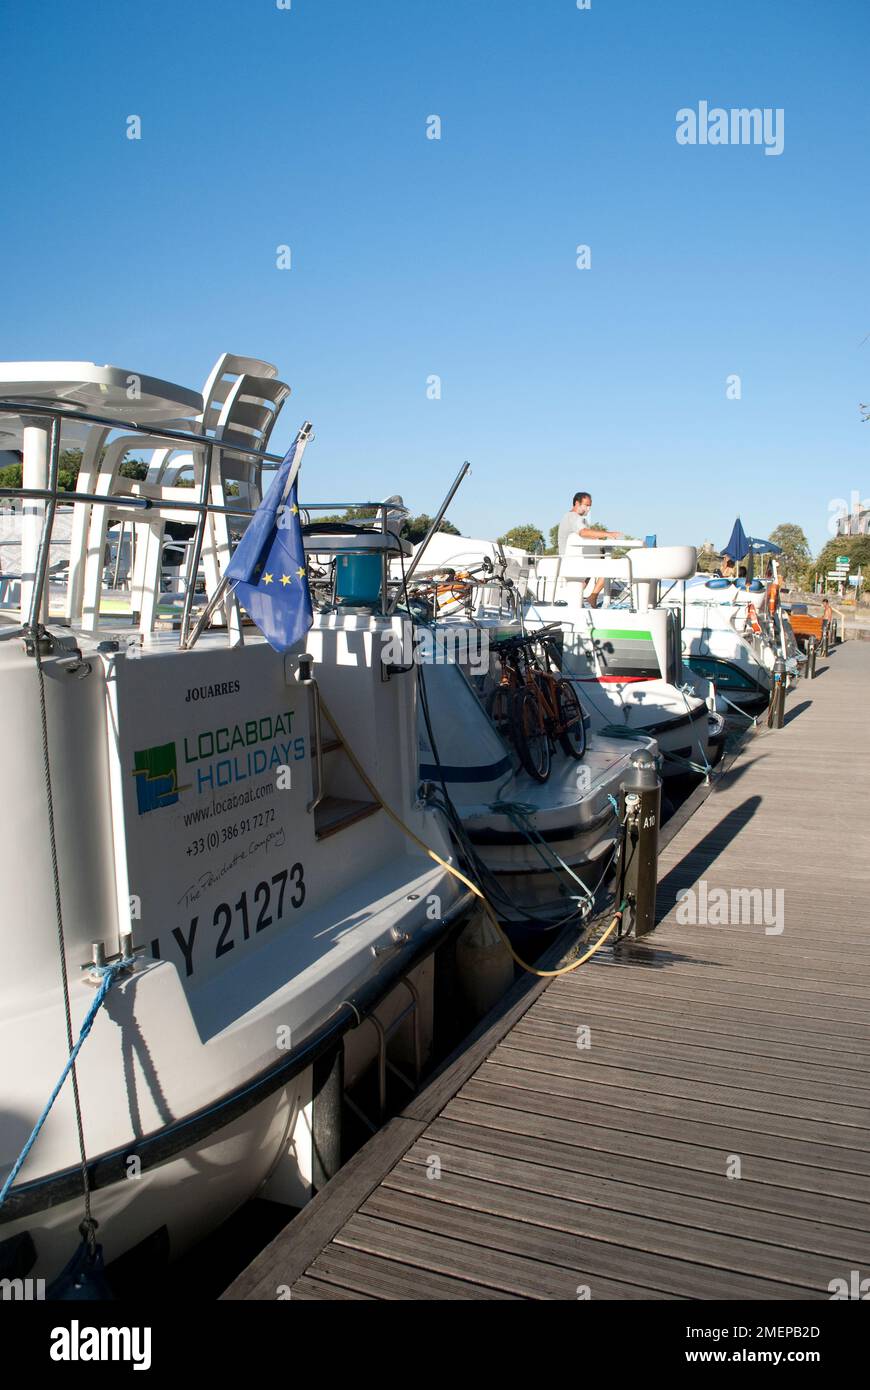 France, Languedoc-Roussillon, Aude, Carcassonne, Canal du midi, location de bateaux Banque D'Images